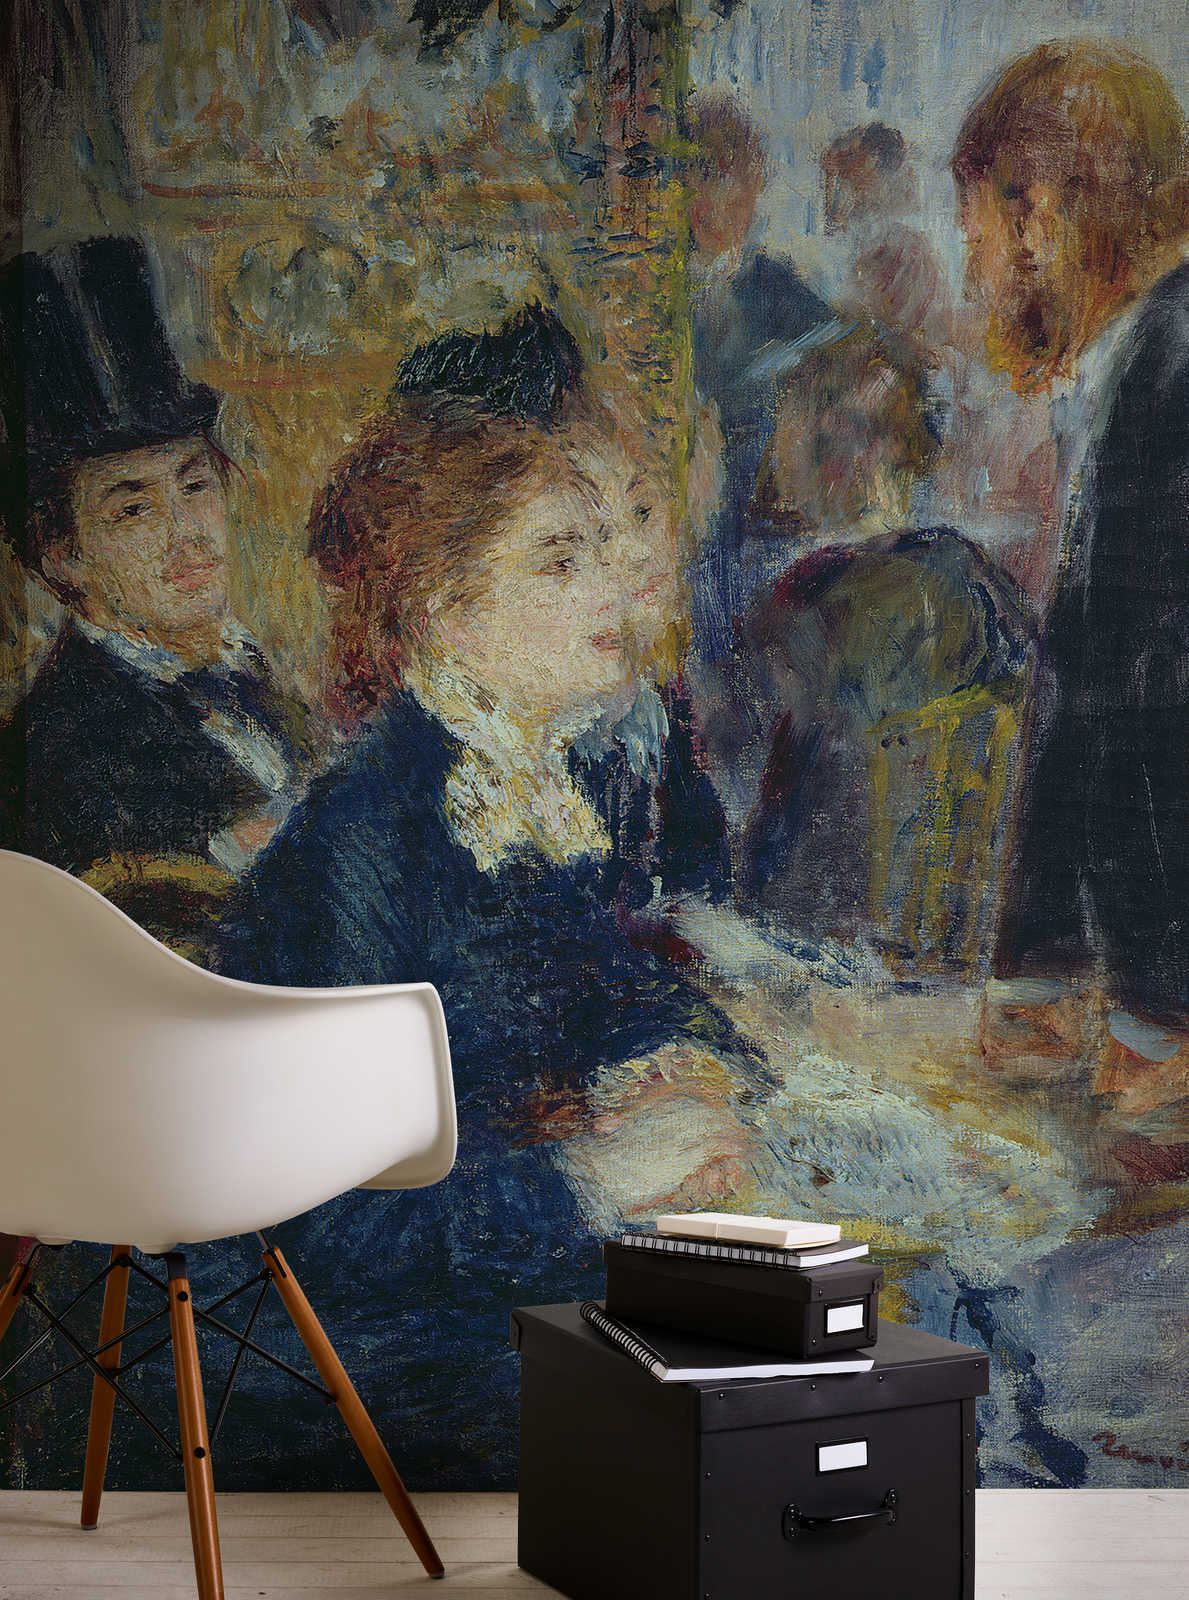             Papier peint "Dans le café" de Pierre Auguste Renoir
        